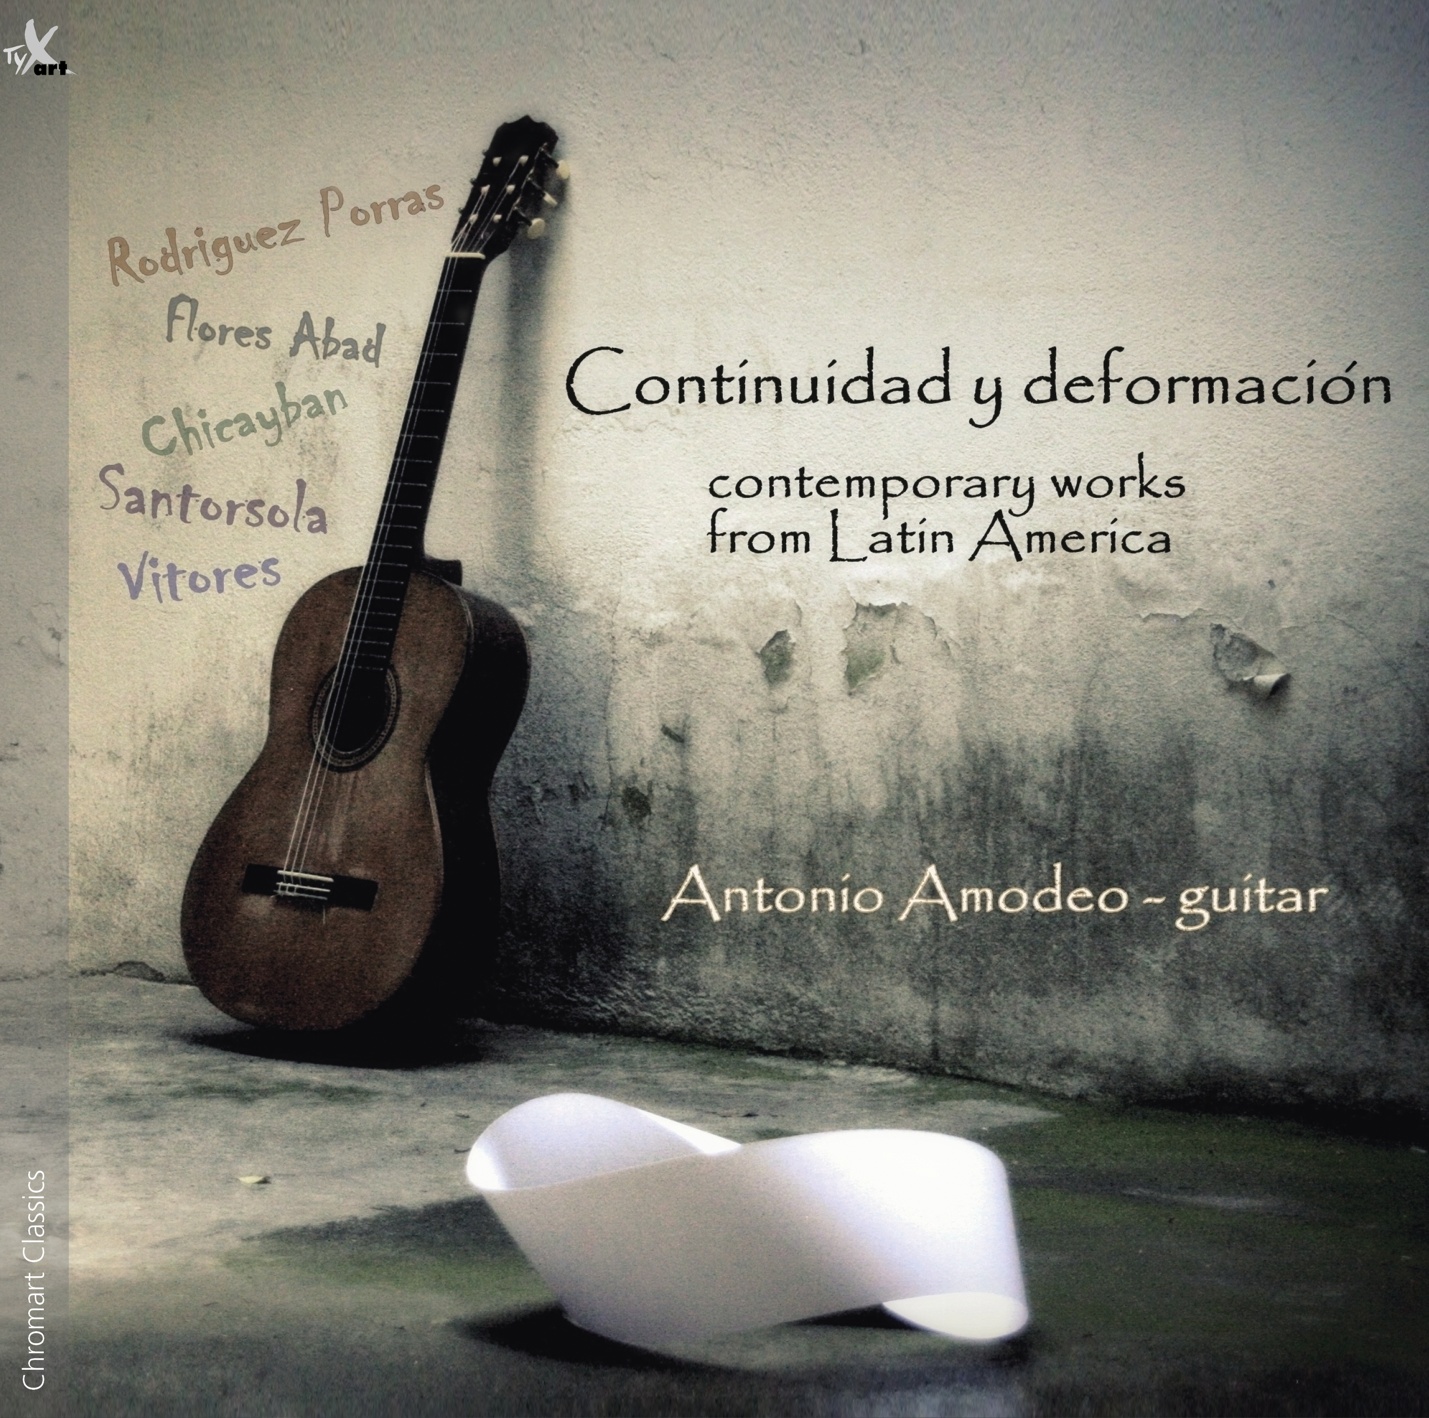 Continuidad y deformaciòn - Antonio Amodeo, Classical Guitar